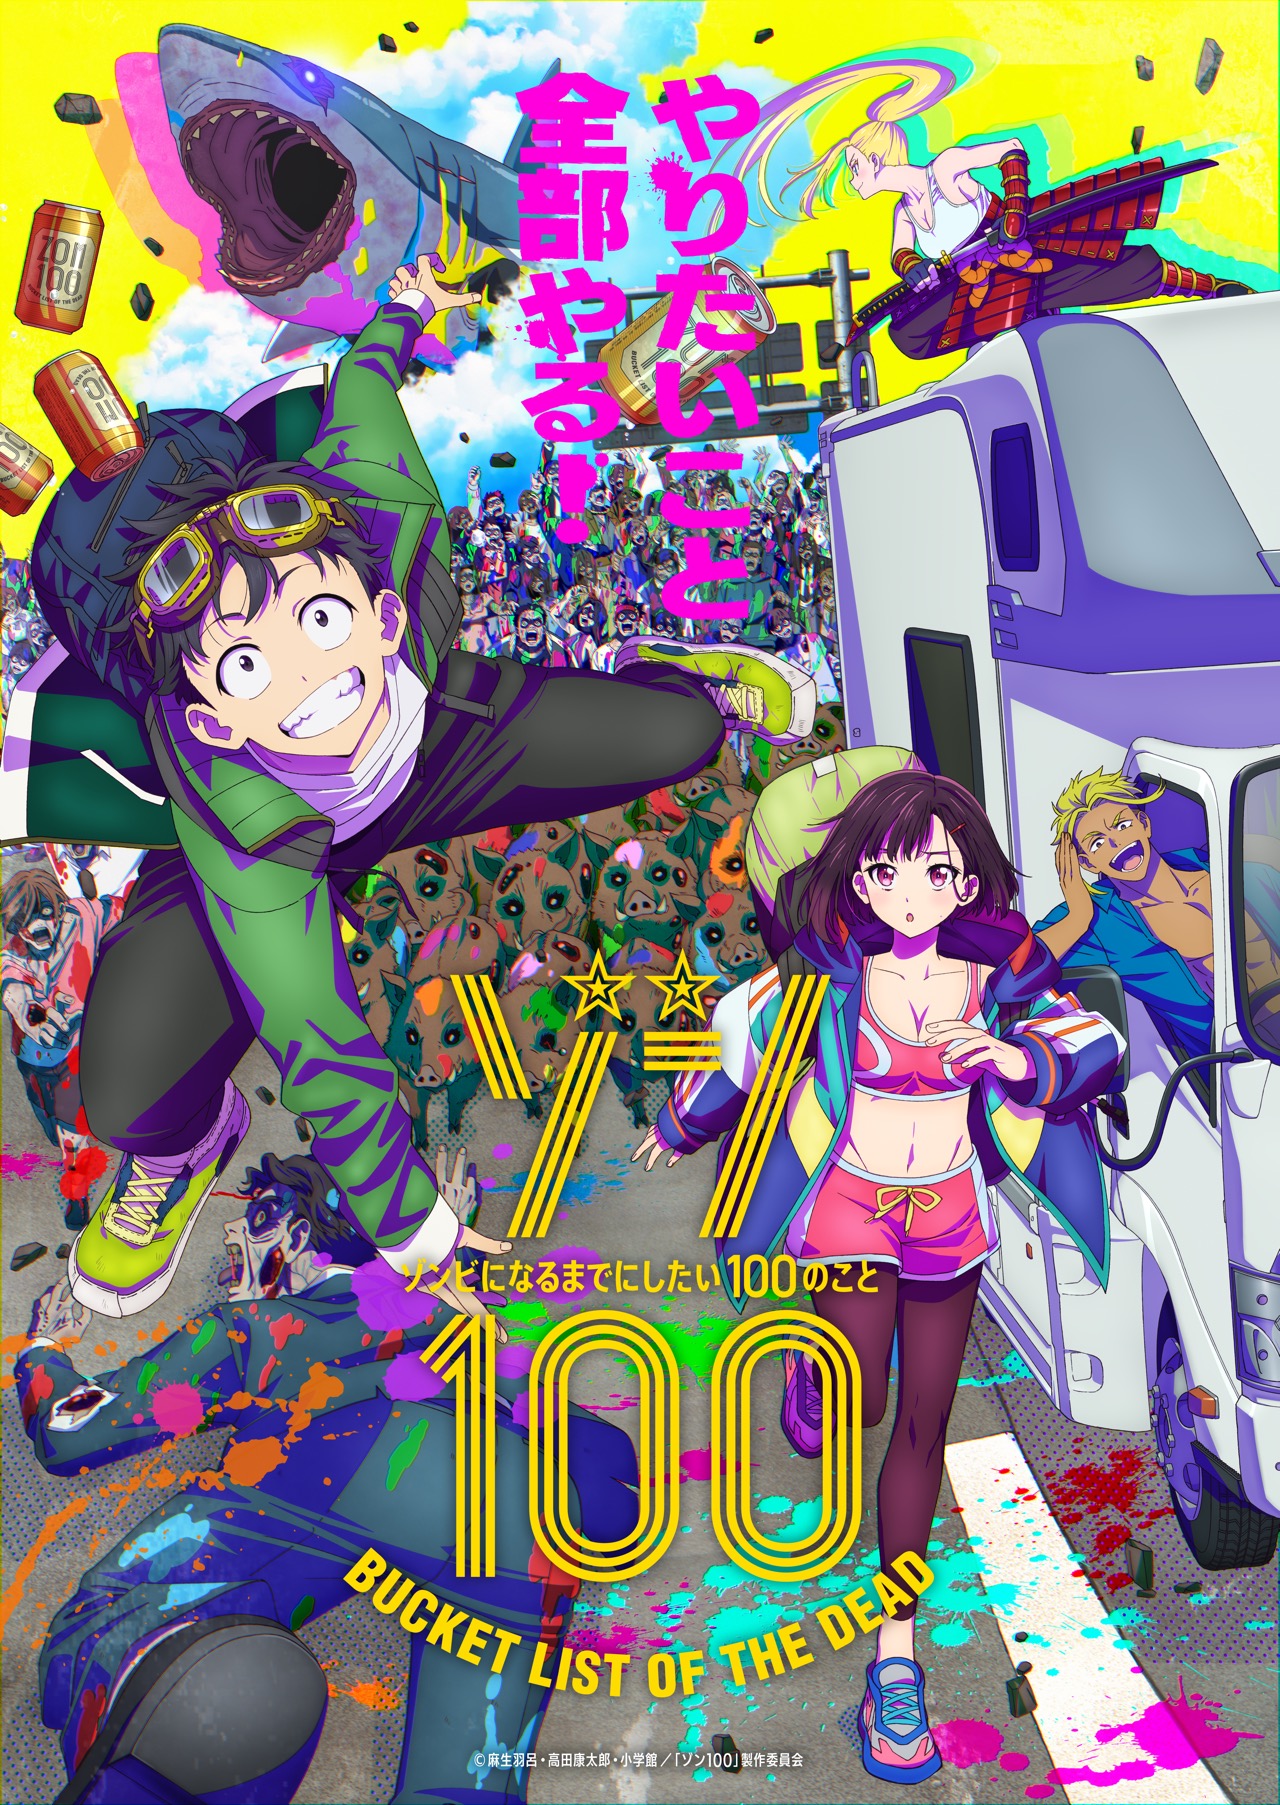 Zom 100 anime